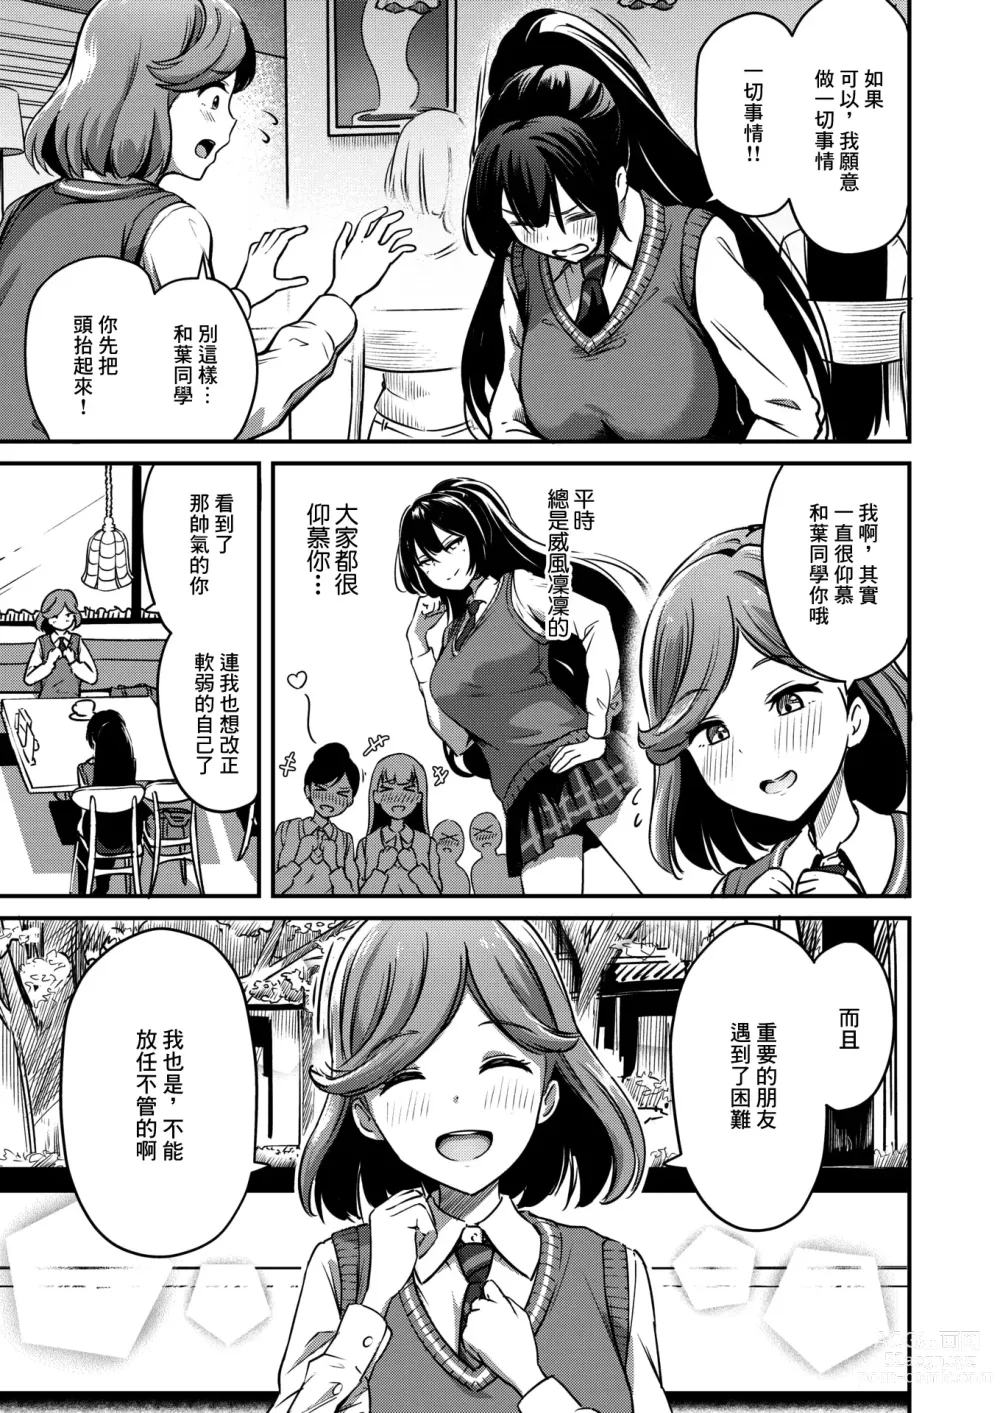 Page 4 of manga Naraba Kono Mi o Sasageyou